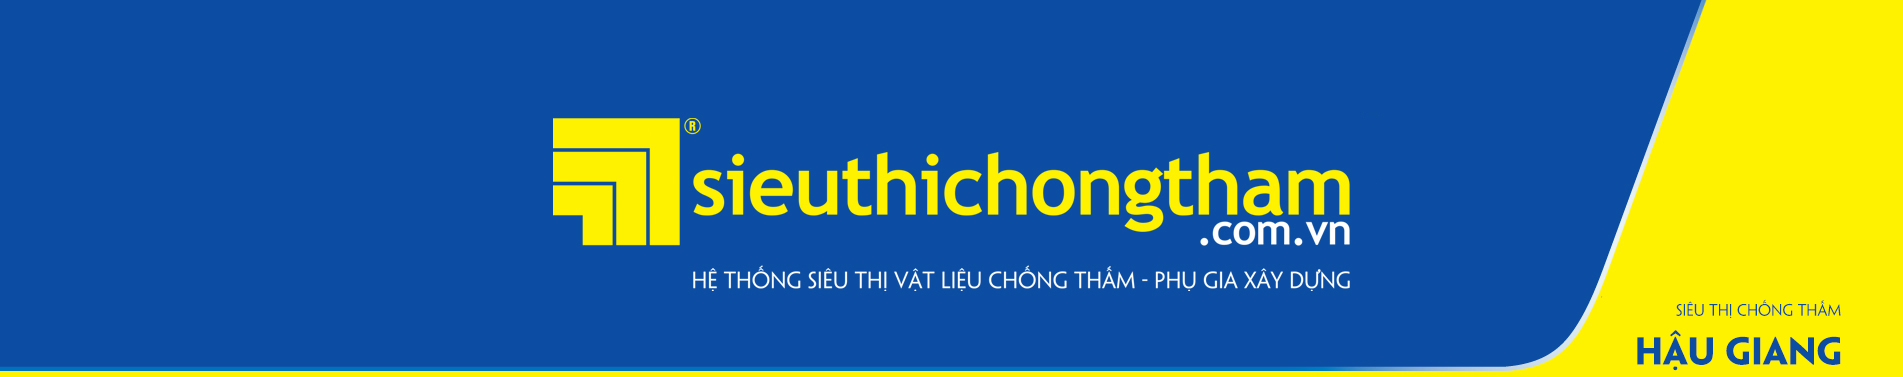 Sieu Thi Chong Tham Hau Giang